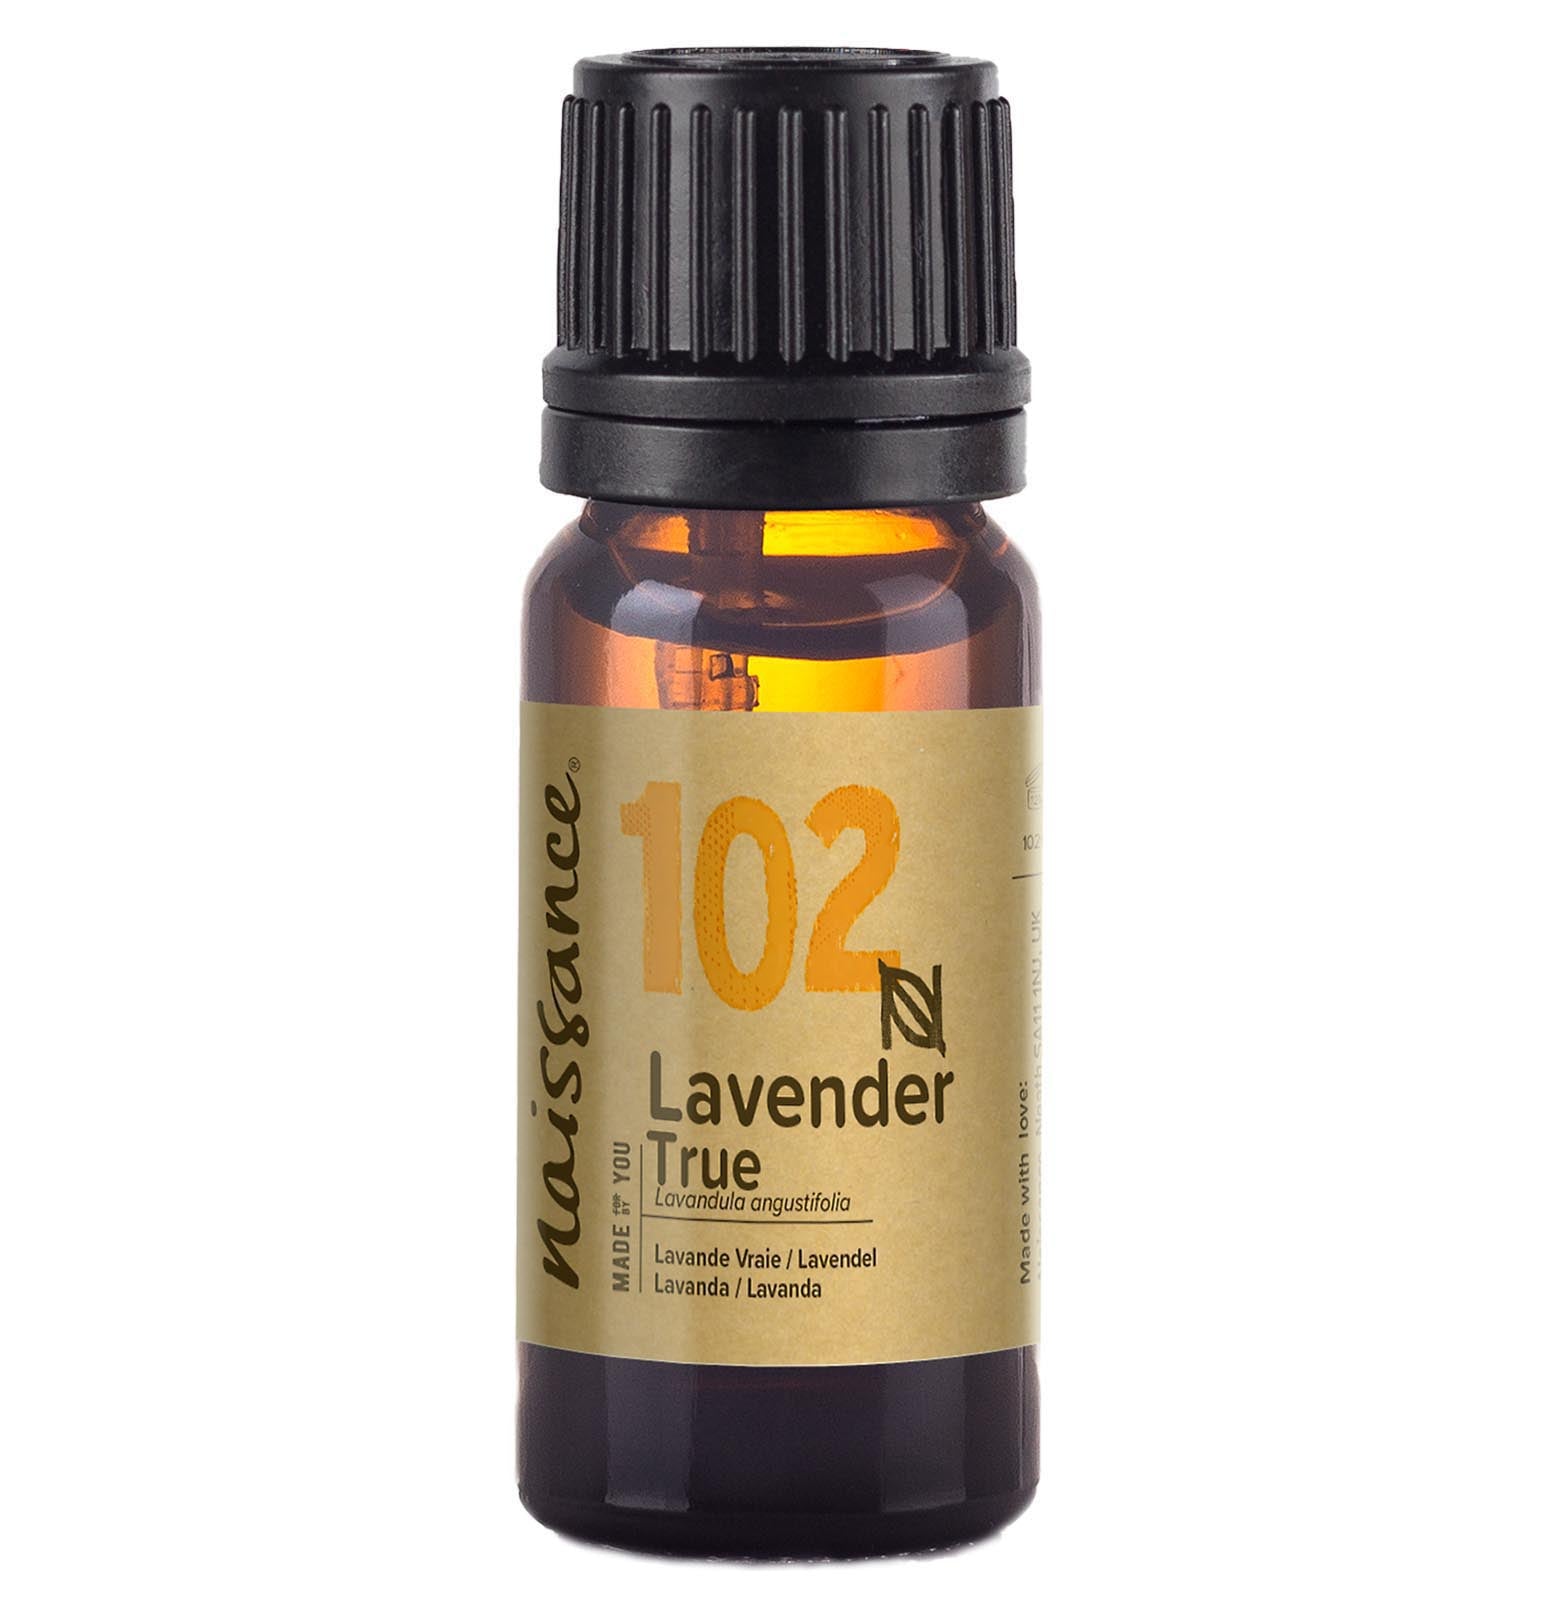 Lavender True Essential Oil (N° 102)